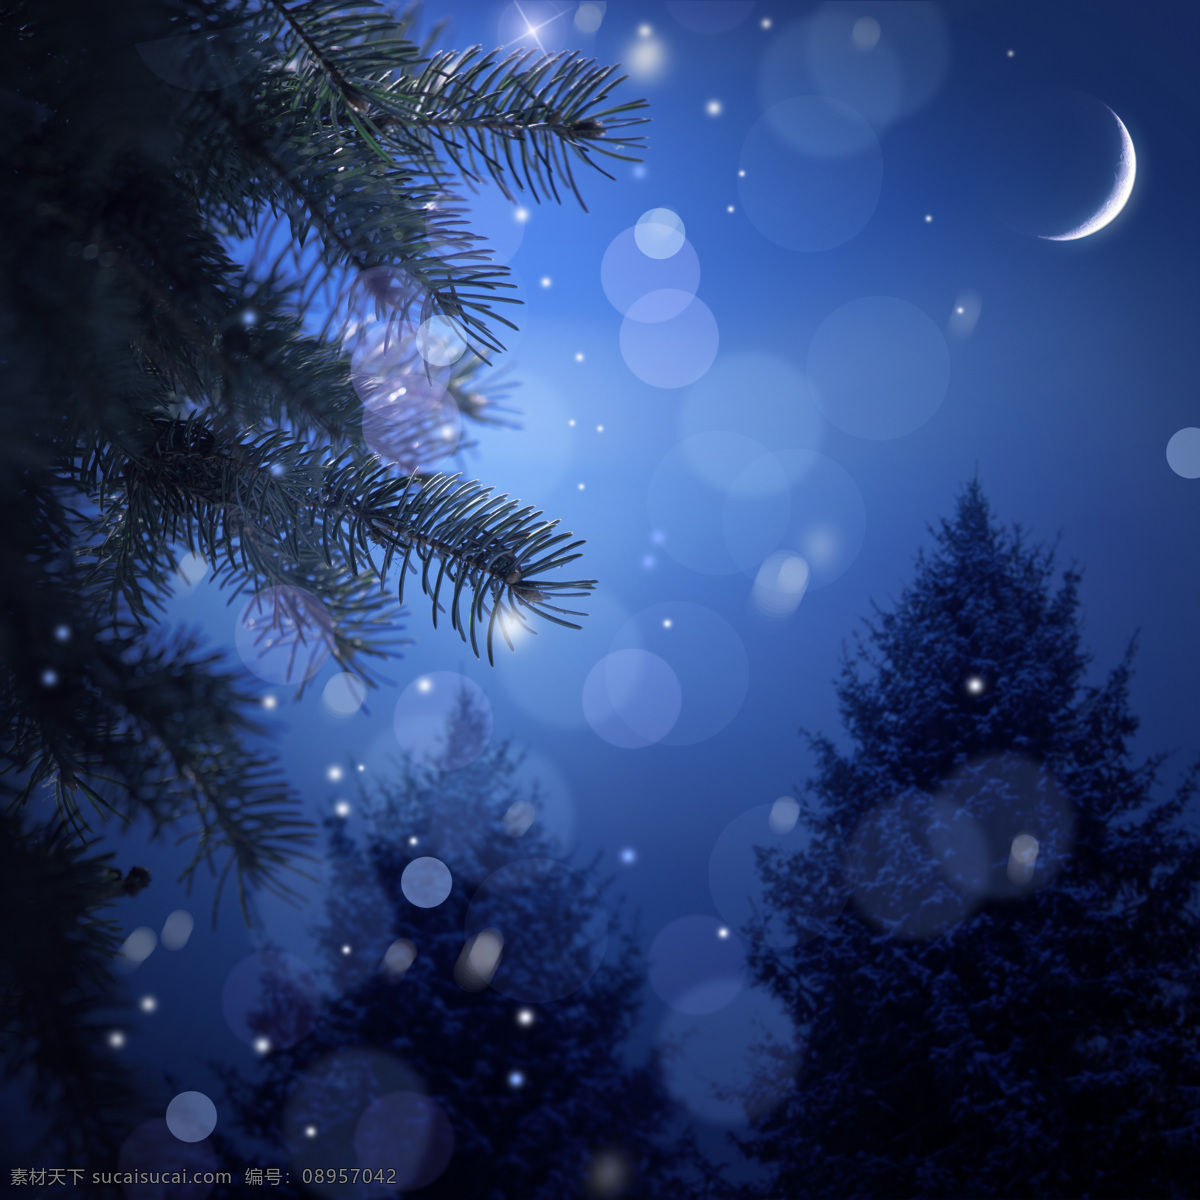 梦幻 圣诞 夜 圣诞夜 圣诞节 节日素材 圣诞之夜 夜景 夜晚 月亮 背景素材 美丽风景 圣诞树 节日庆典 生活百科